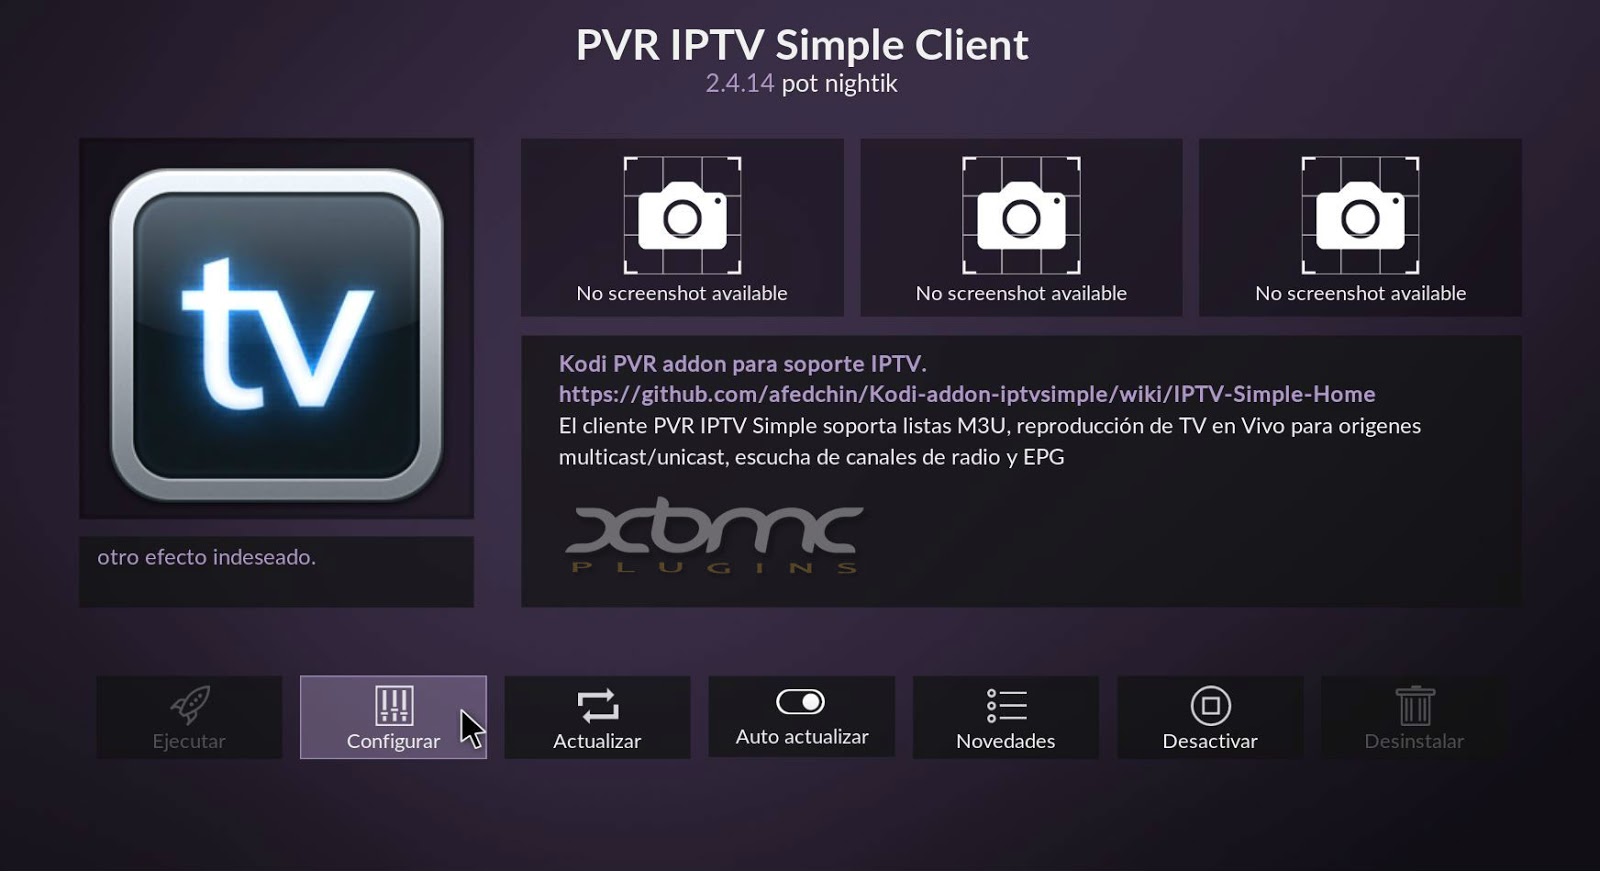 Simple client. EPG. Listas PVR IPTV simple client.